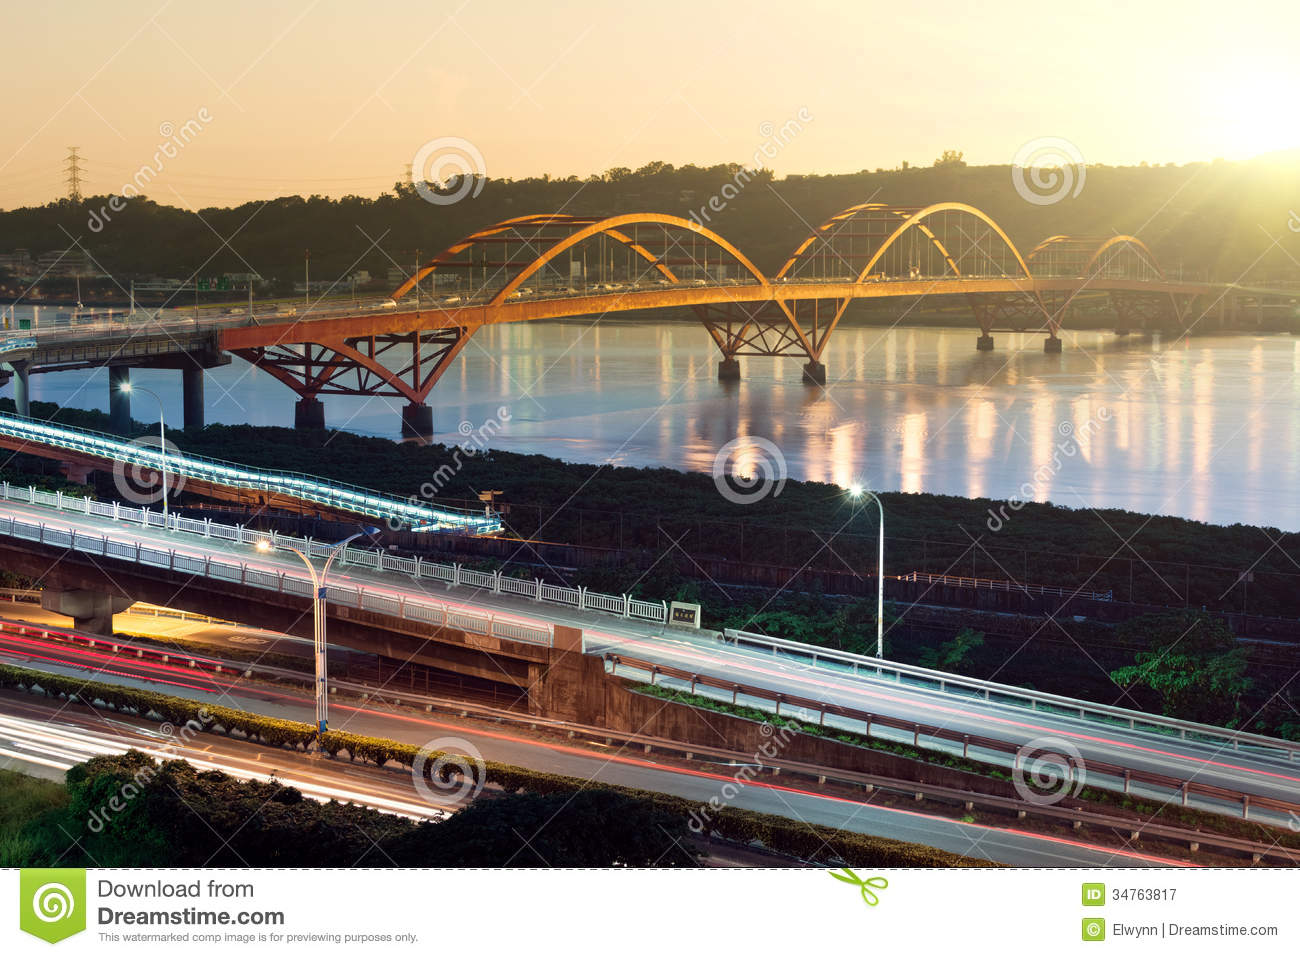 Images of Guandu Bridge | 1300x957